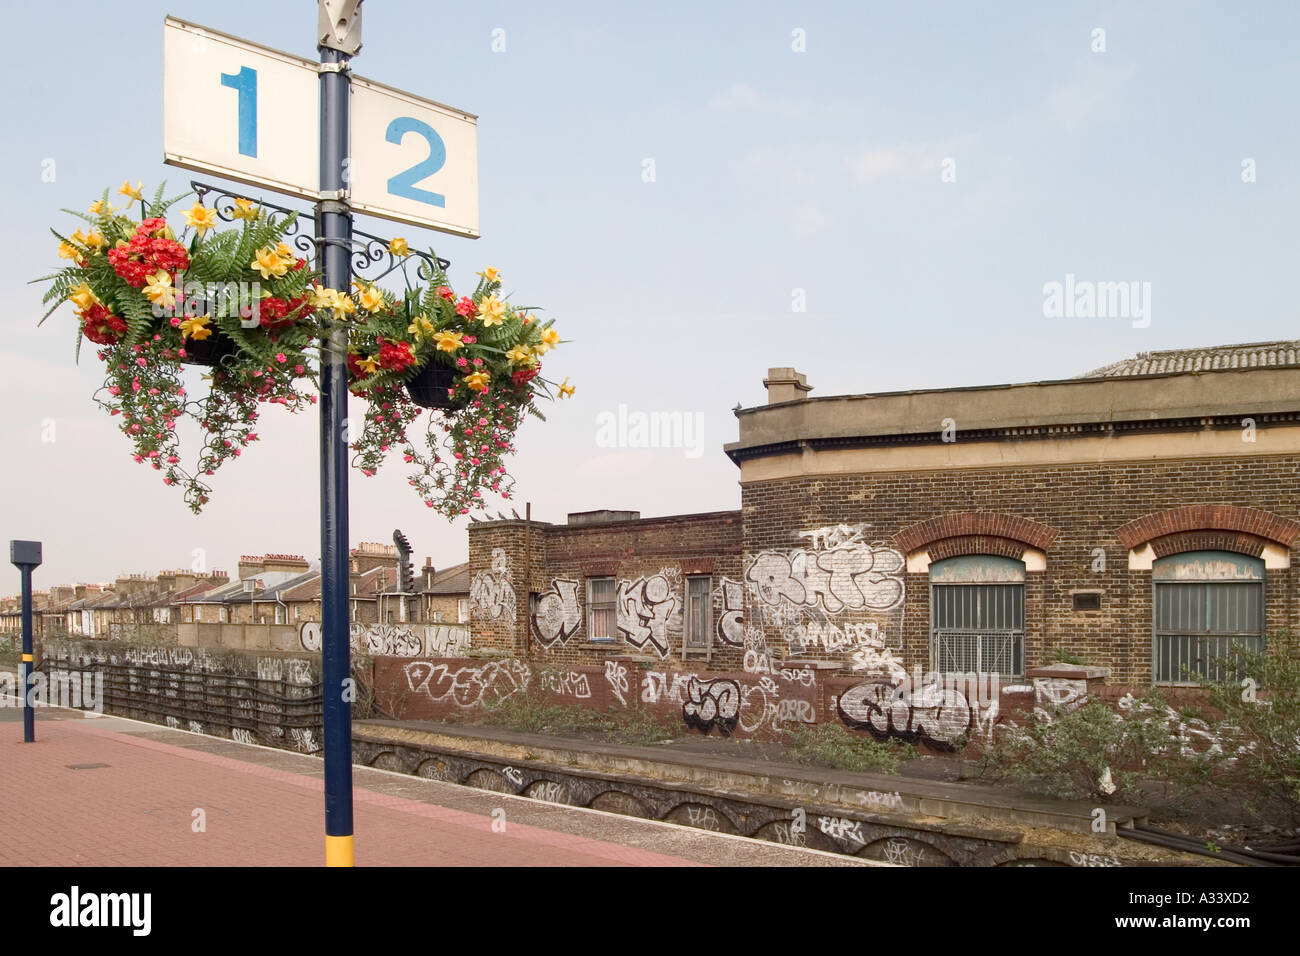 Des fleurs en plastique et de graffitis. Loughborough Junction Station, Londres, Angleterre Banque D'Images